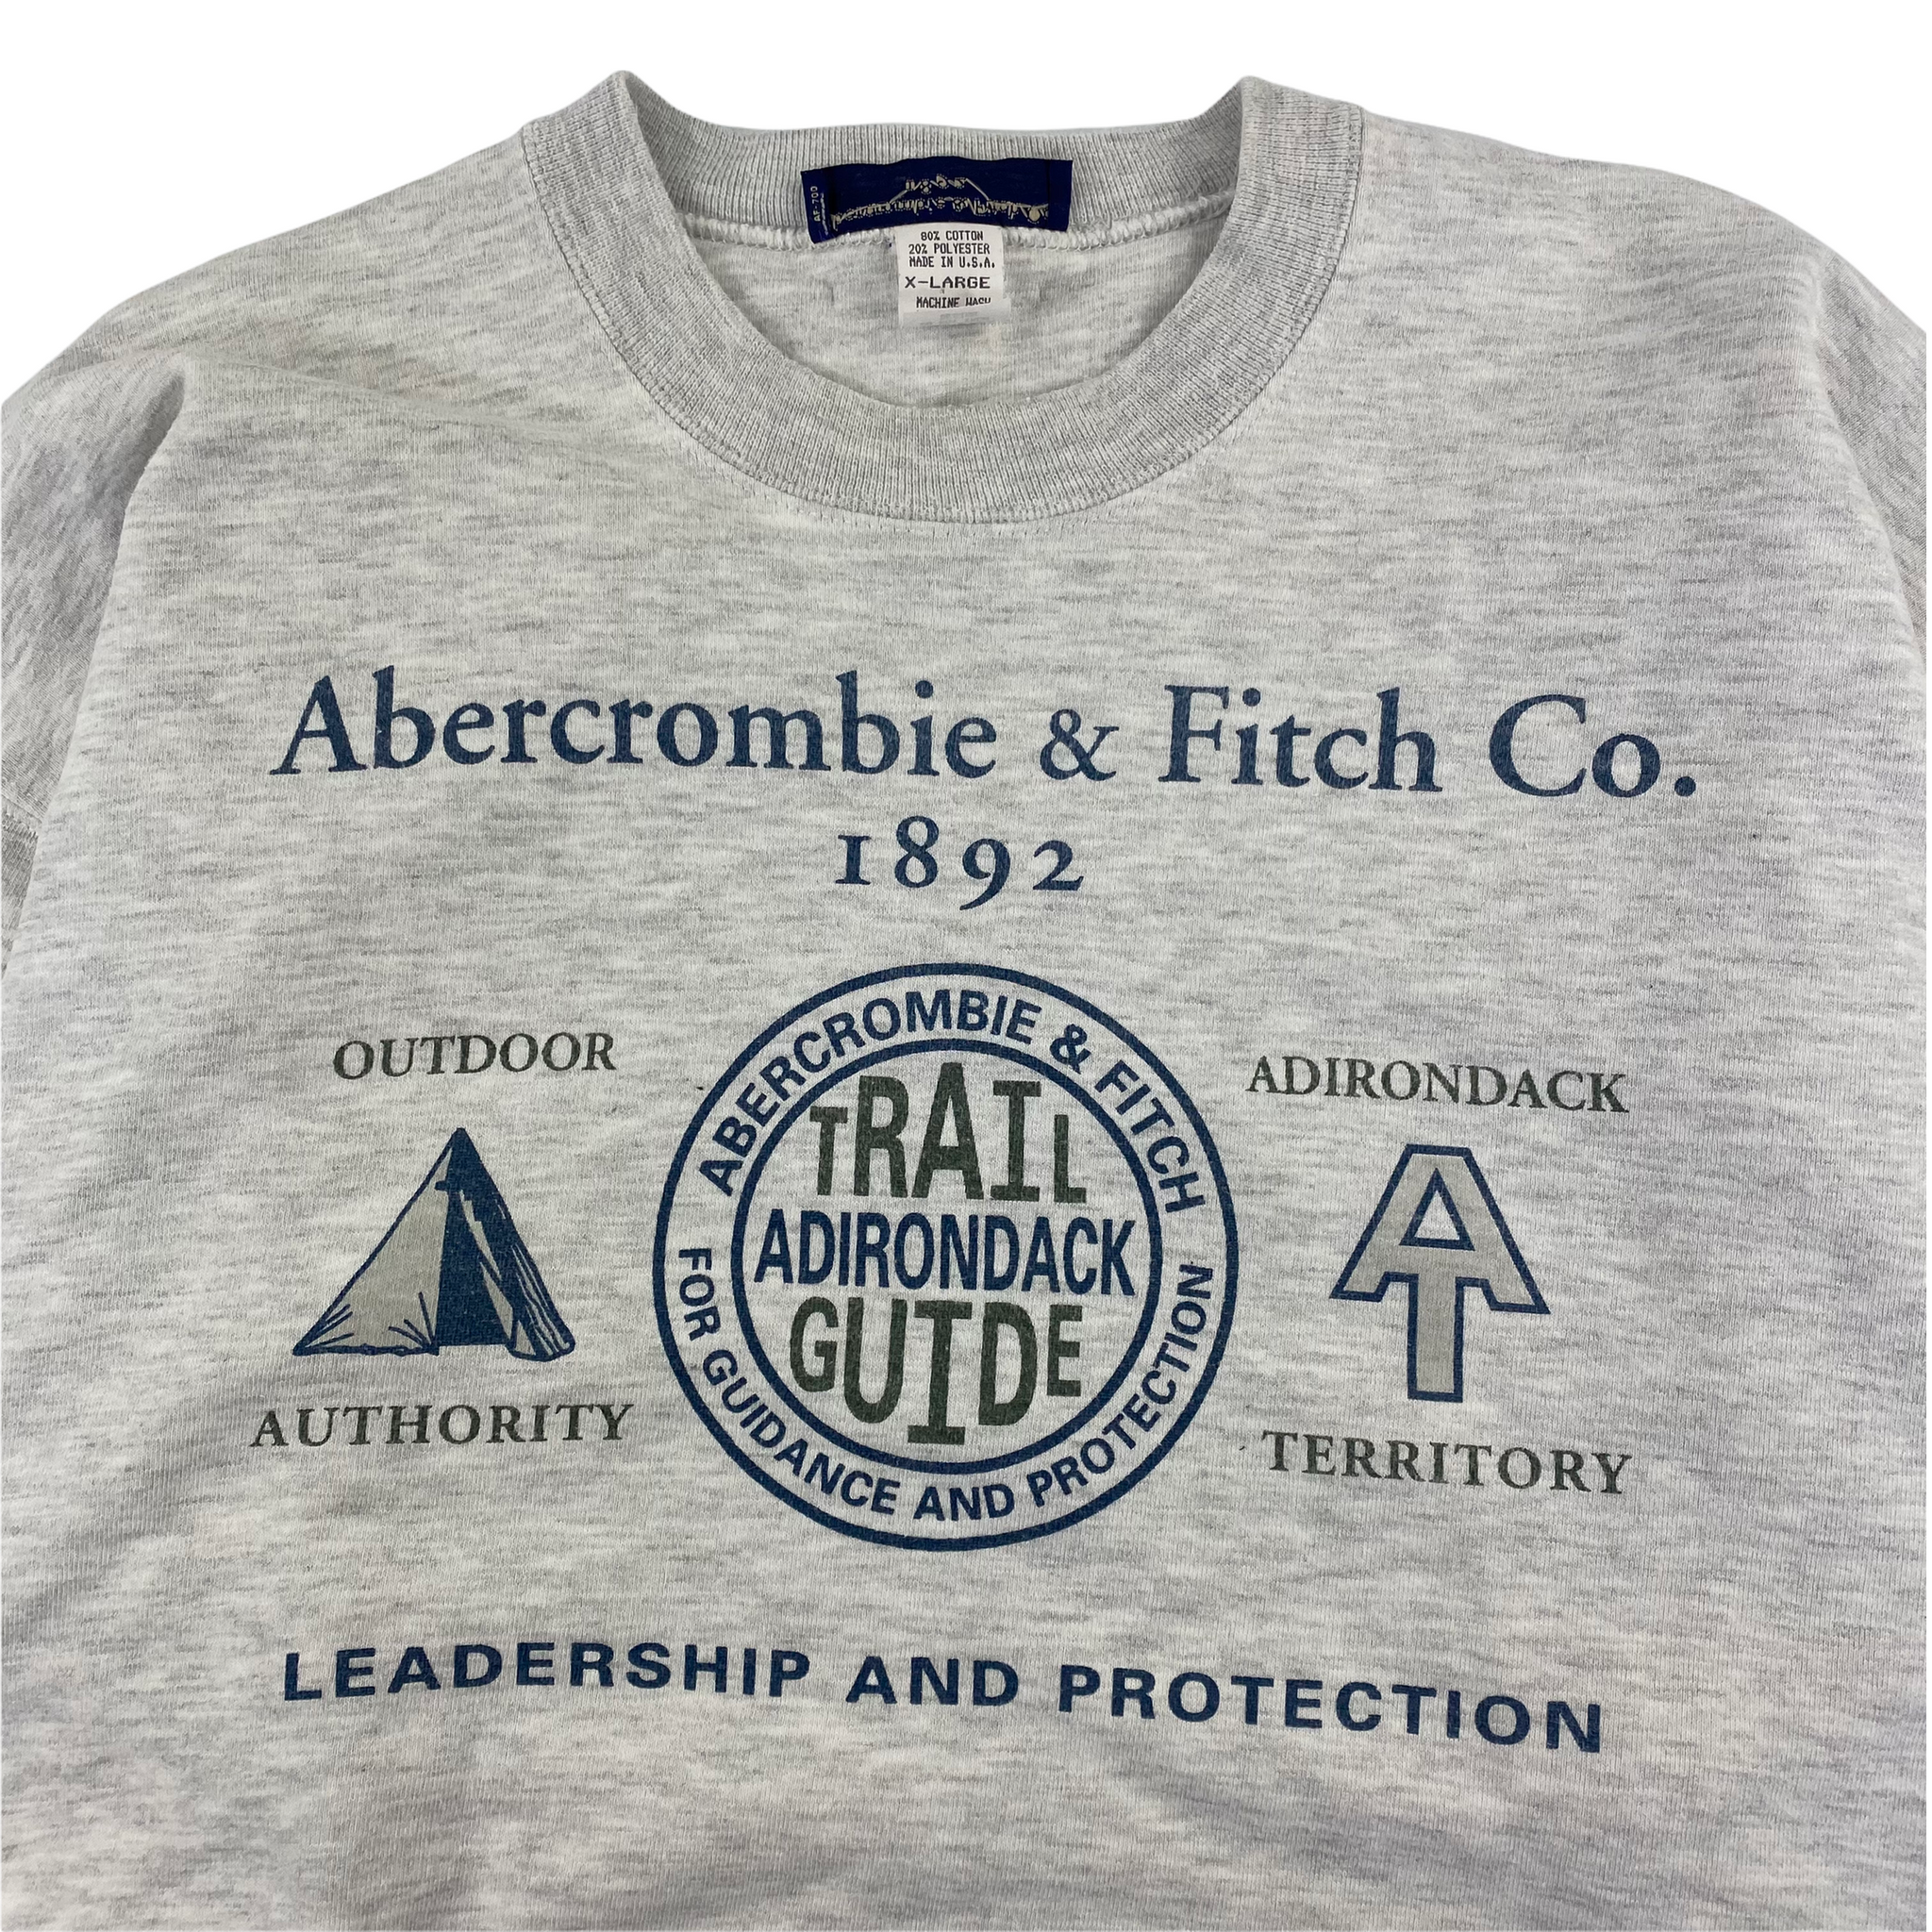 Abercrombie trail guide sweatshirt. XL